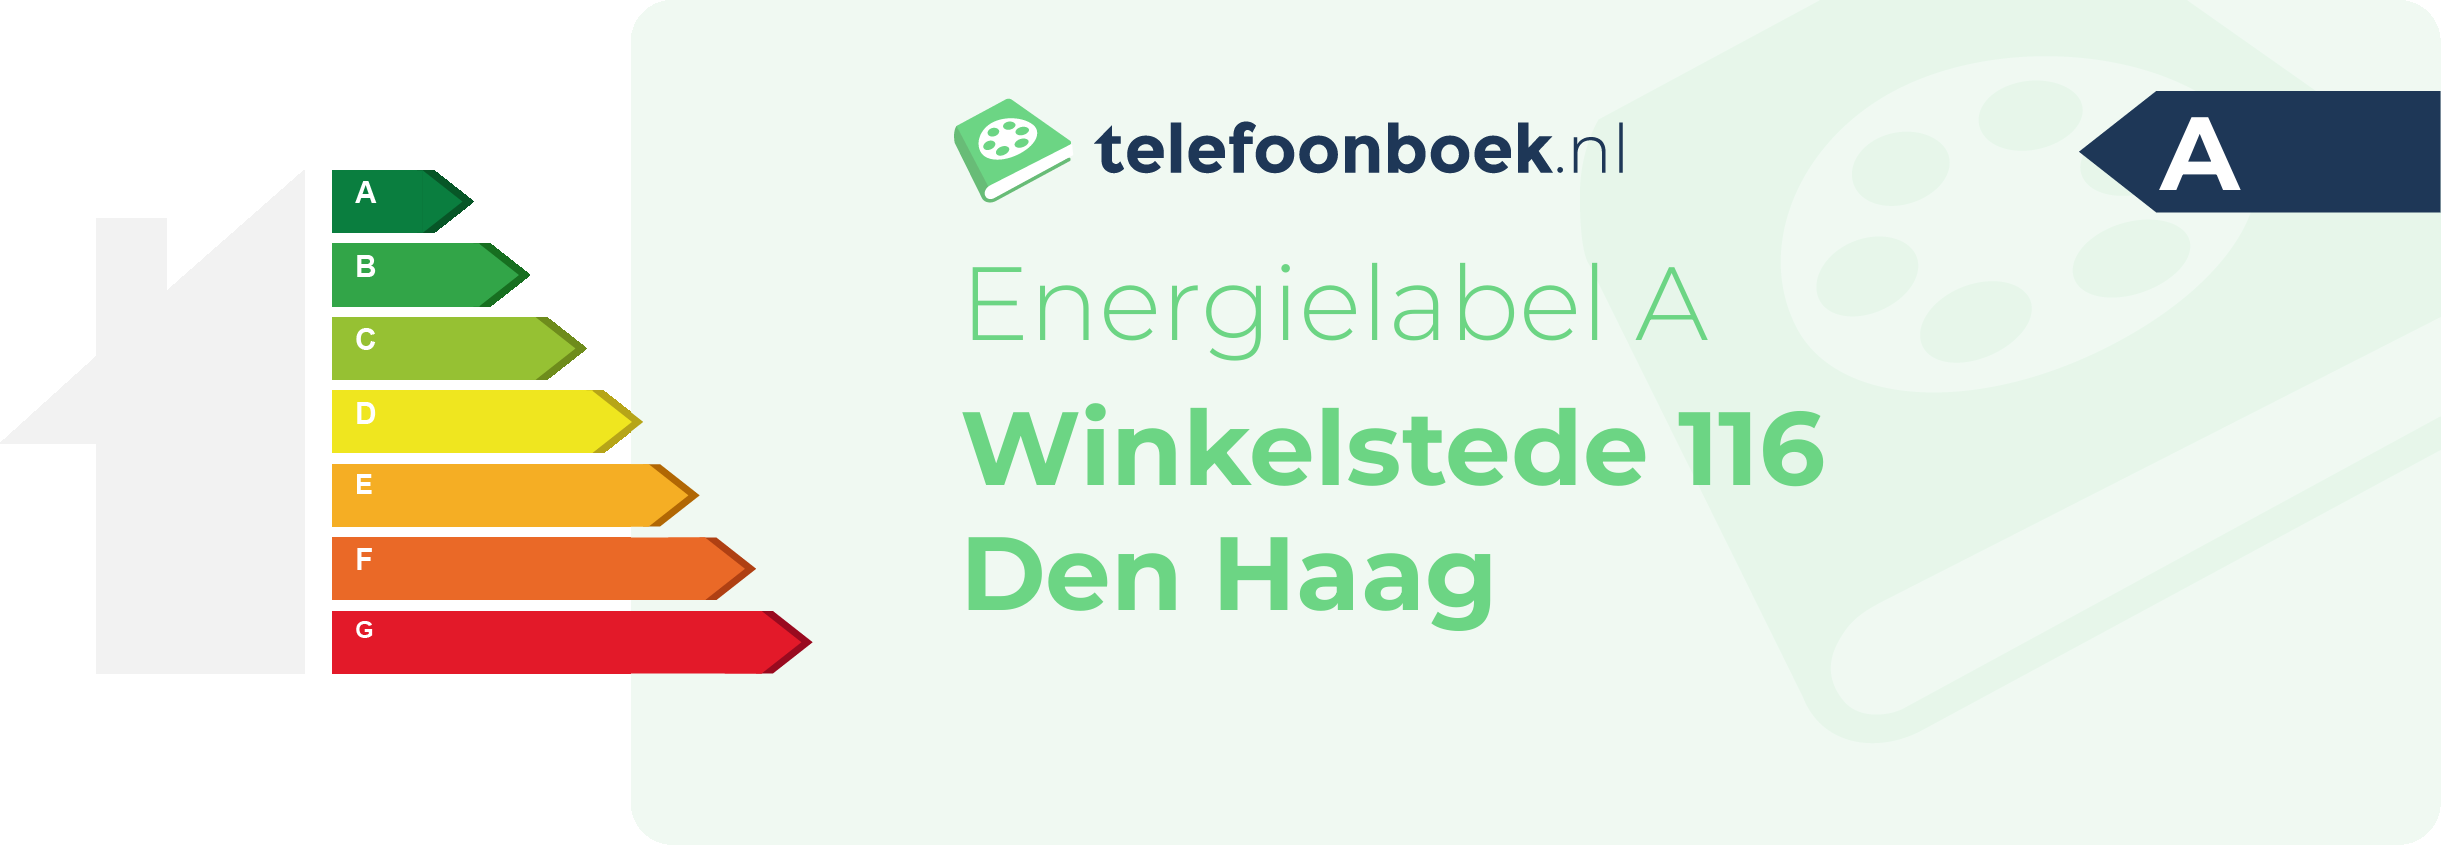 Energielabel Winkelstede 116 Den Haag